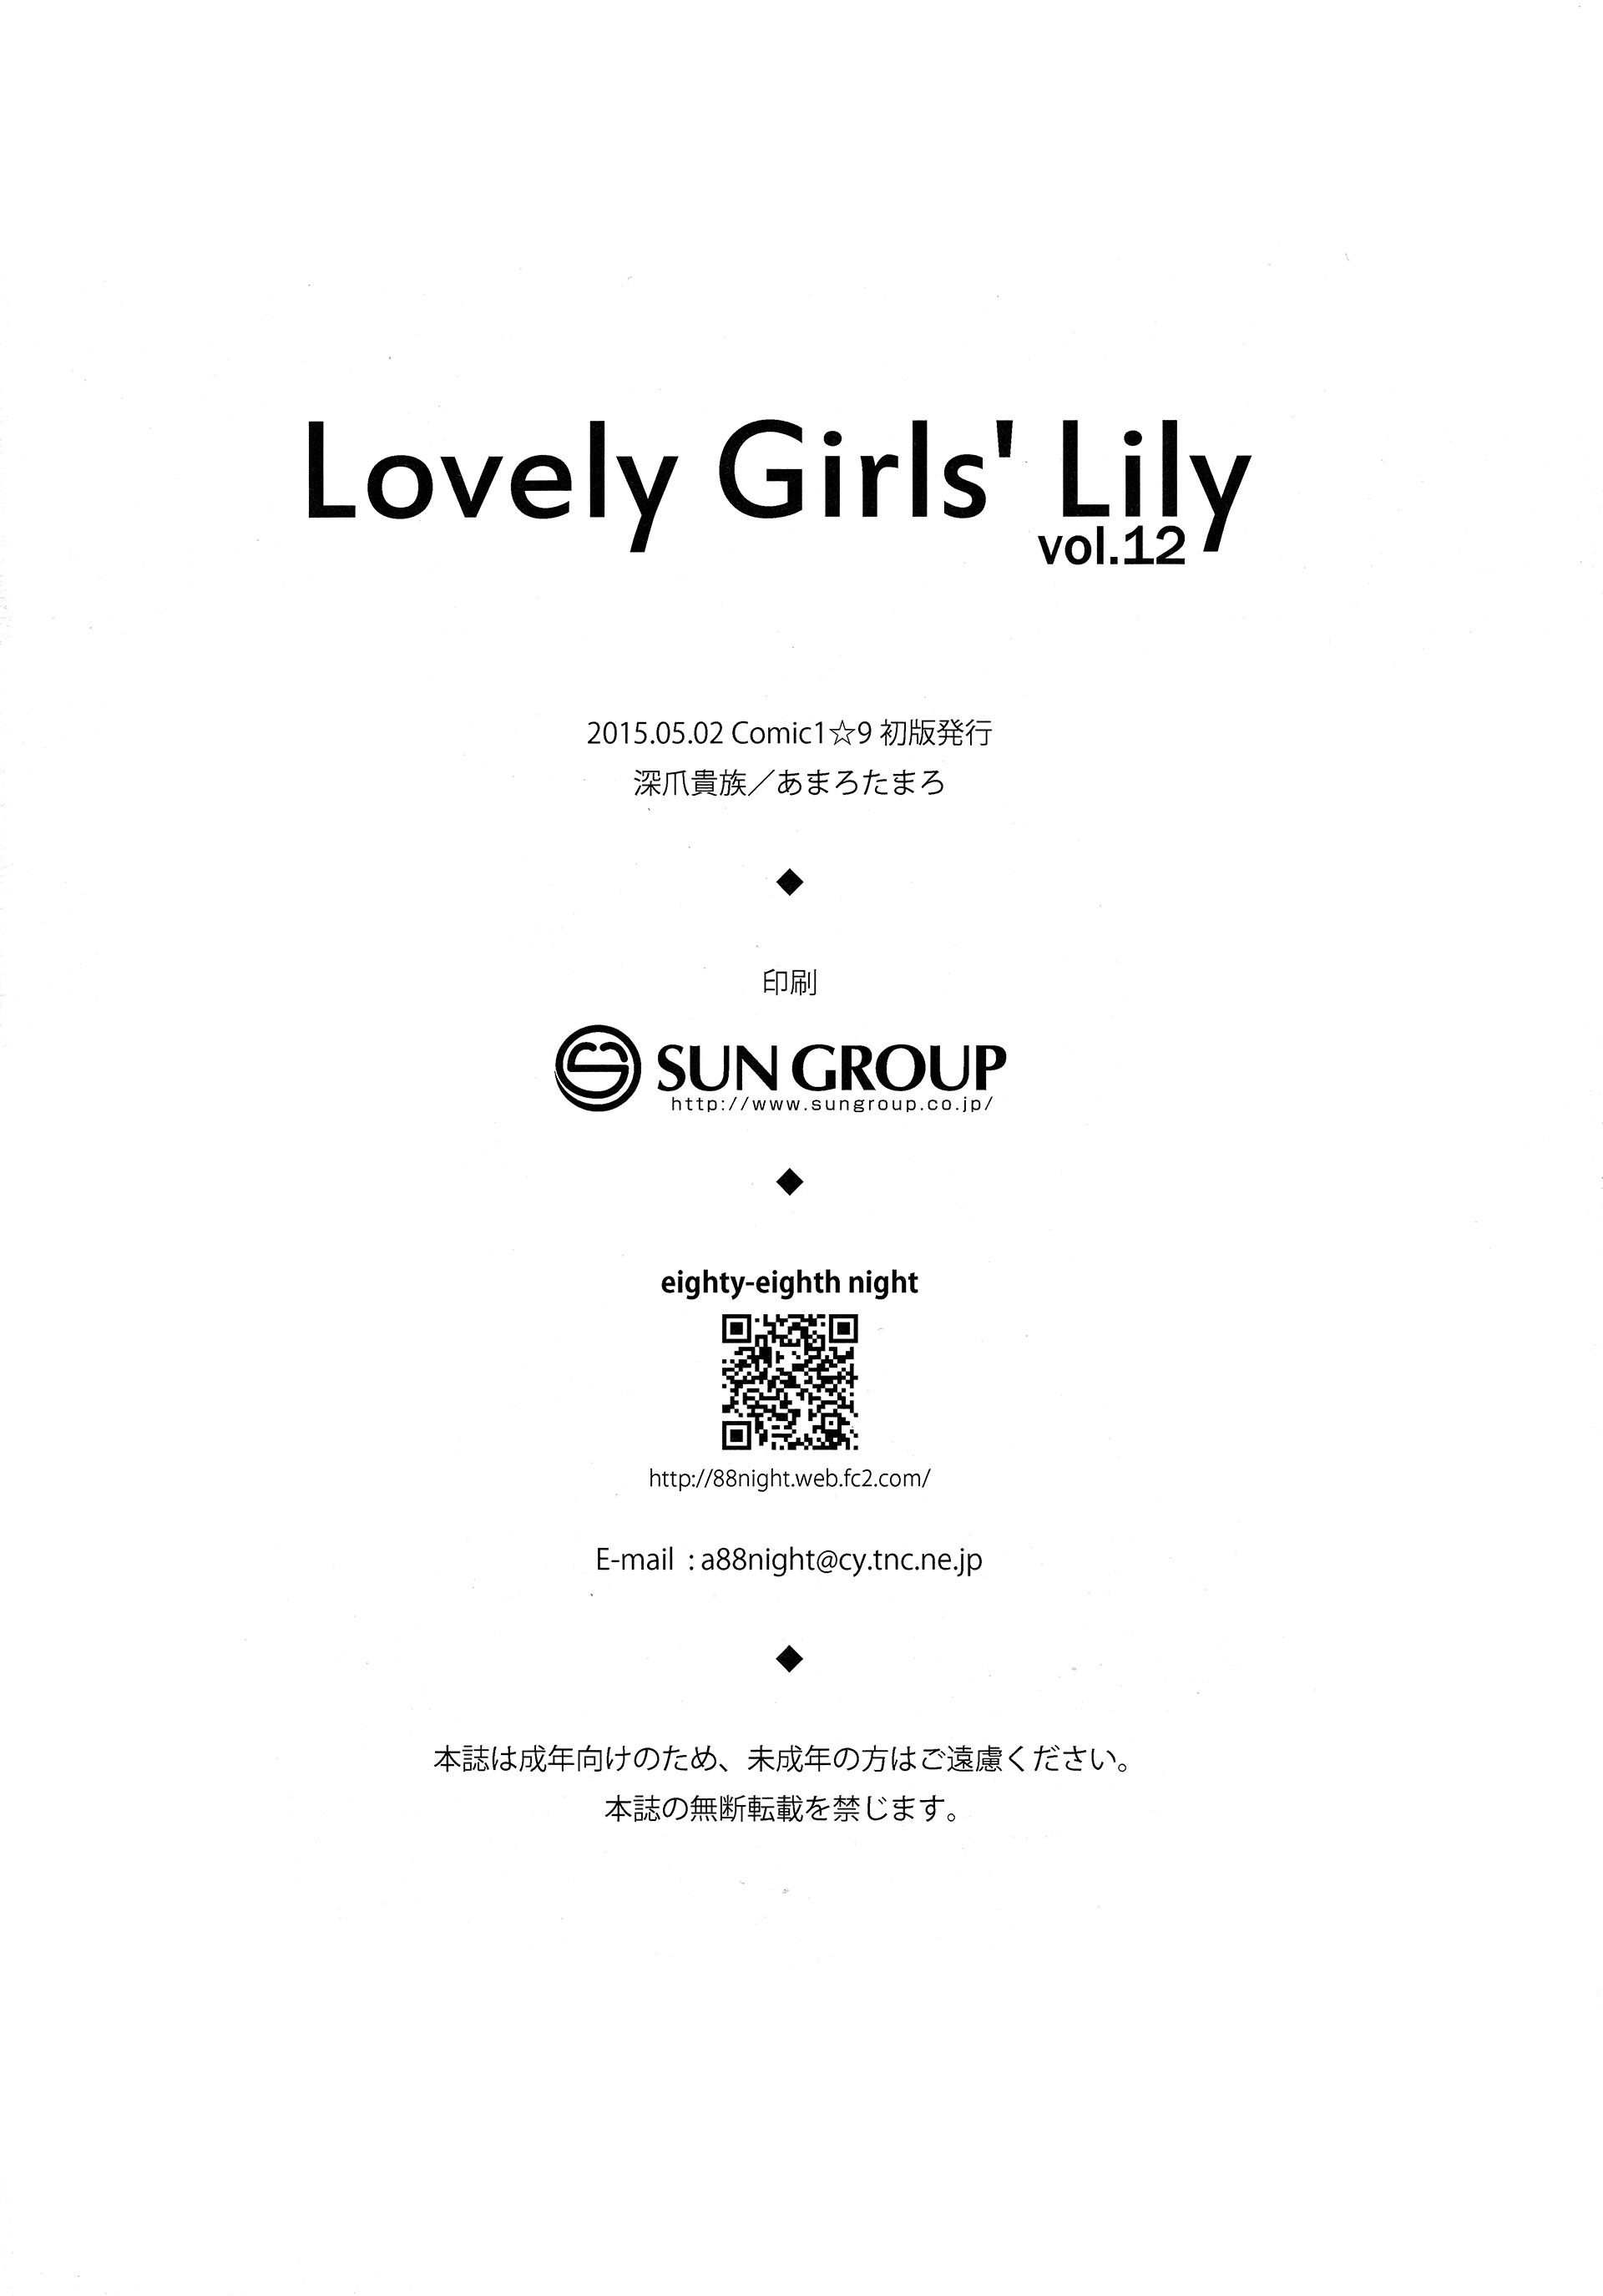 (COMIC1☆9) [深爪貴族 (あまろたまろ)] LGL Lovely Girls' Lily vol.12 (艦隊これくしょん -艦これ-)